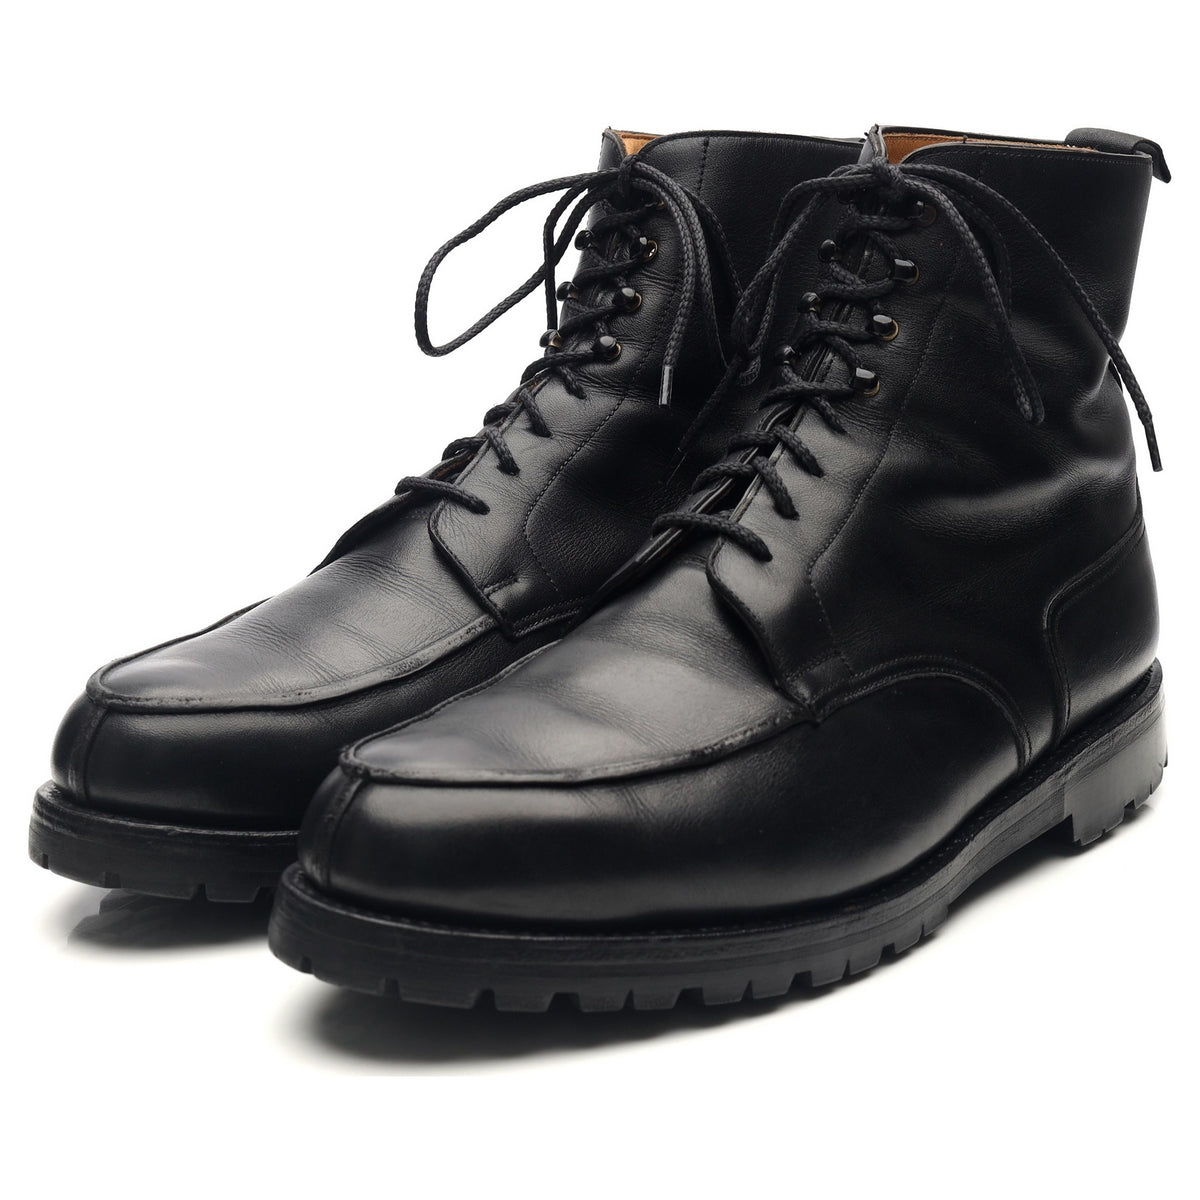 Black Leather Split Toe Boots UK 11 E